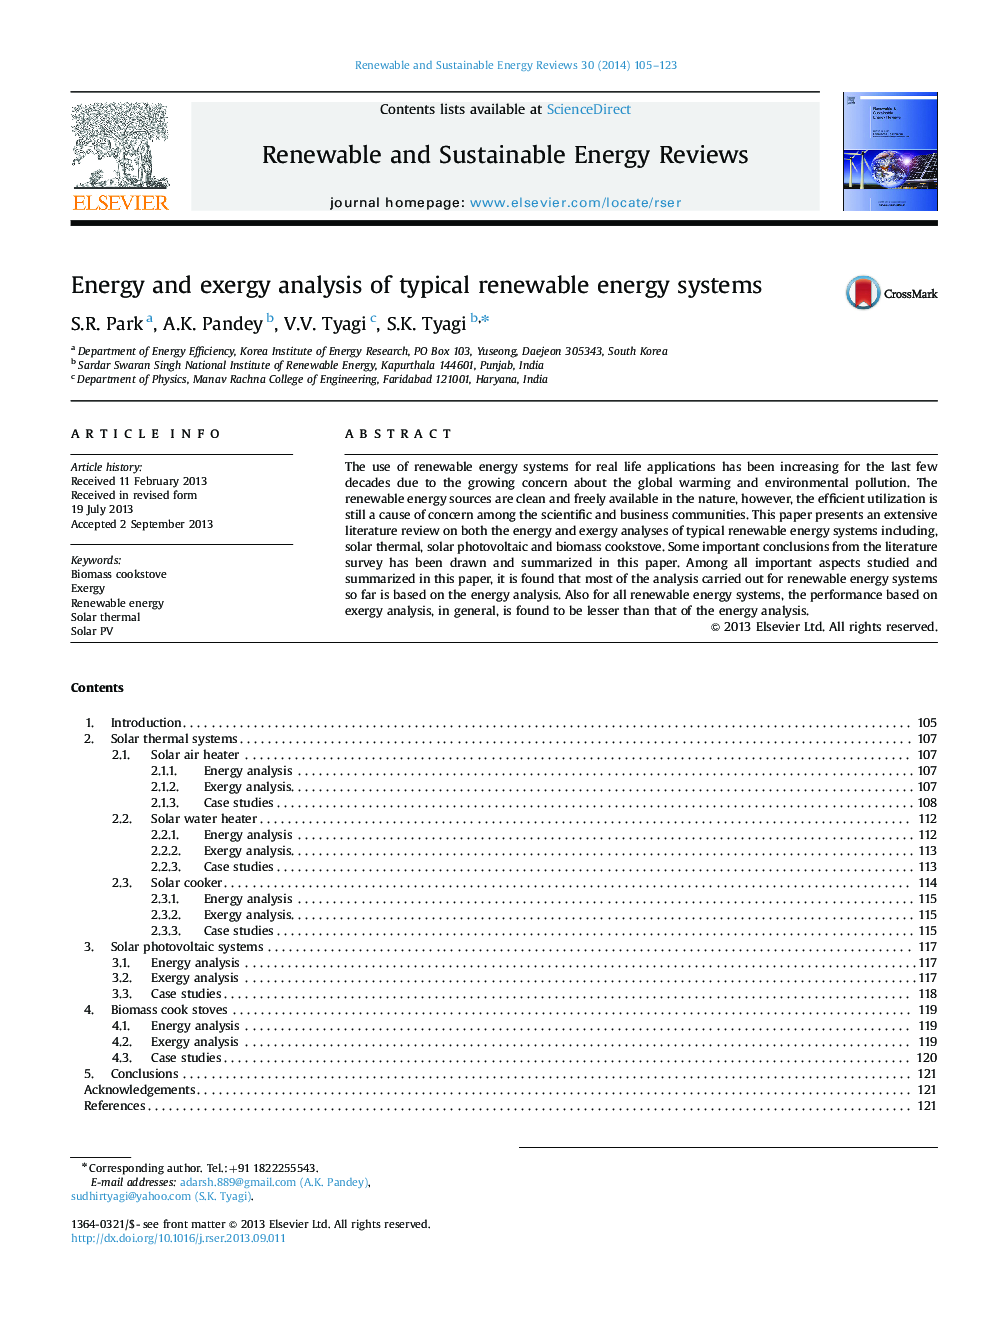 تجزیه و تحلیل انرژی و اکسرژی سیستم های انرژی تجدید پذیر معمول 